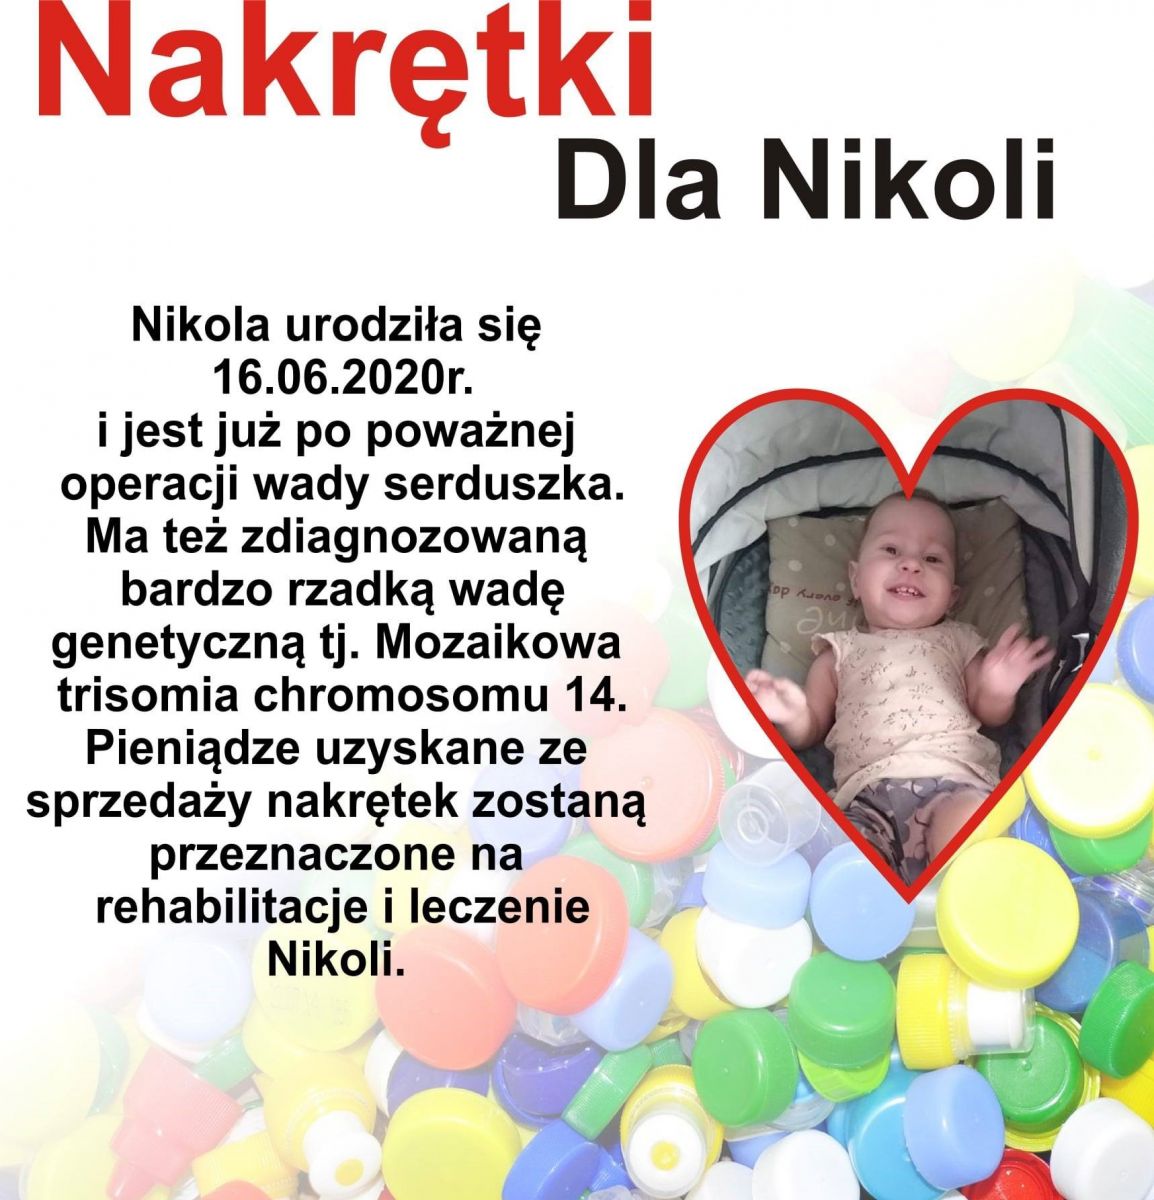 Plakat przedstawiający 16- miesięczną dziewczynkę oraz opis: Nakrętki dla Nikoli. Nikola urodziła się 16.06.2020r. i jest już po poważnej operacji serduszka.Ma też zdiagnozowaną bardzo rzadką wadę genetyczną tj. mozaikową trisomię chromosomu 14.Pieniądze uzyskane ze sprzedaży nakrętek zostaną przeznaczone na rehabilitację i leczenie Nikoli.